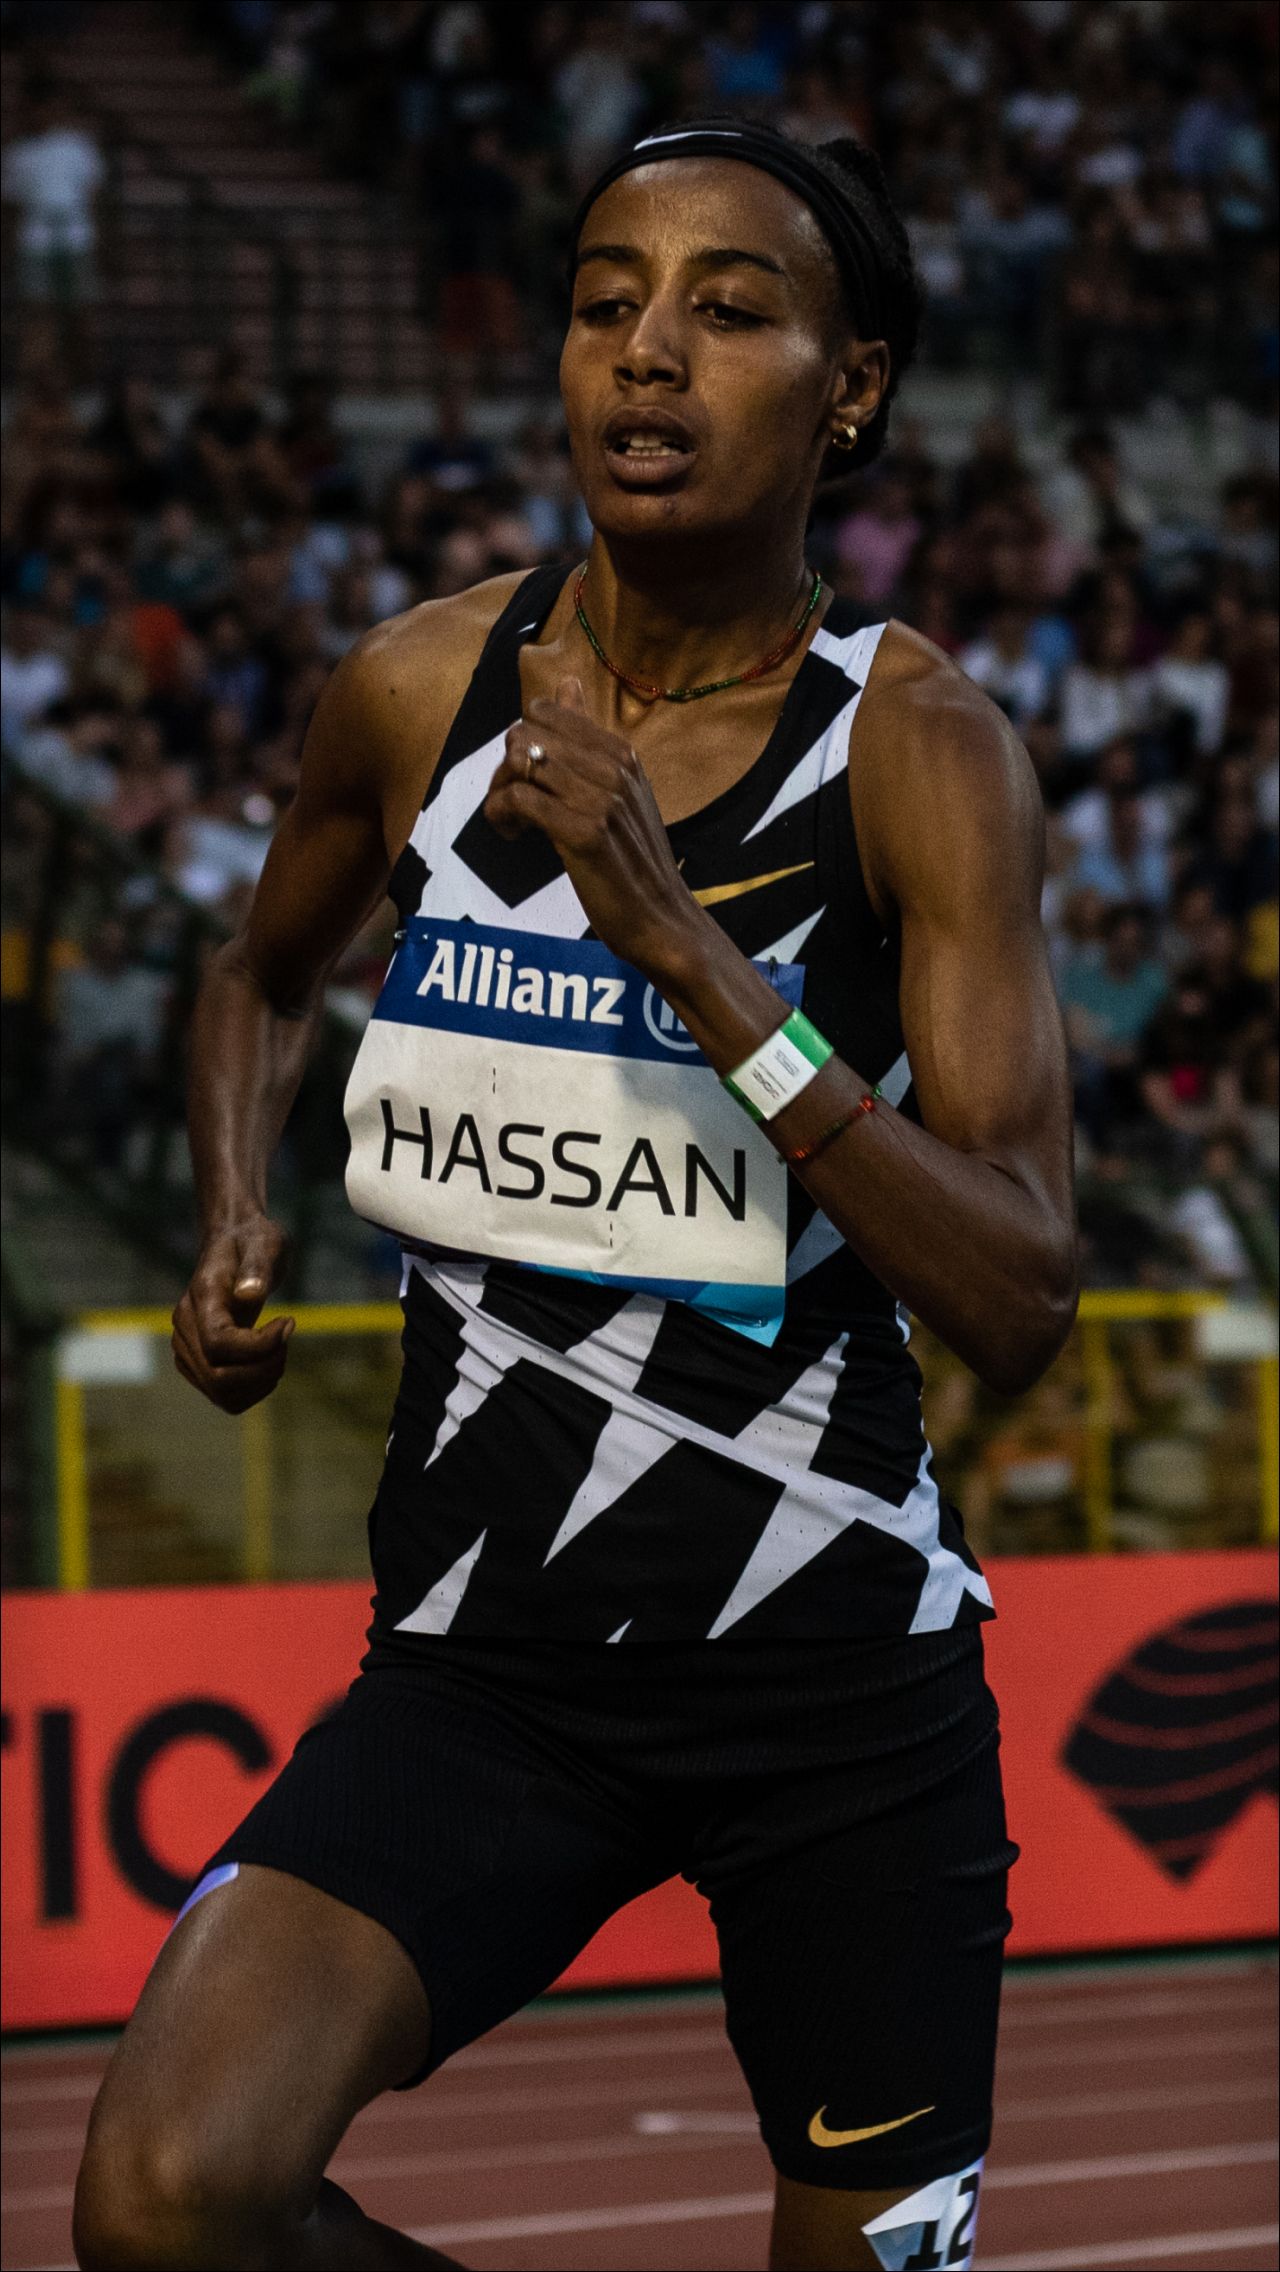 Сифан Хассан, 1500 м, 5000 м и 10 000 м